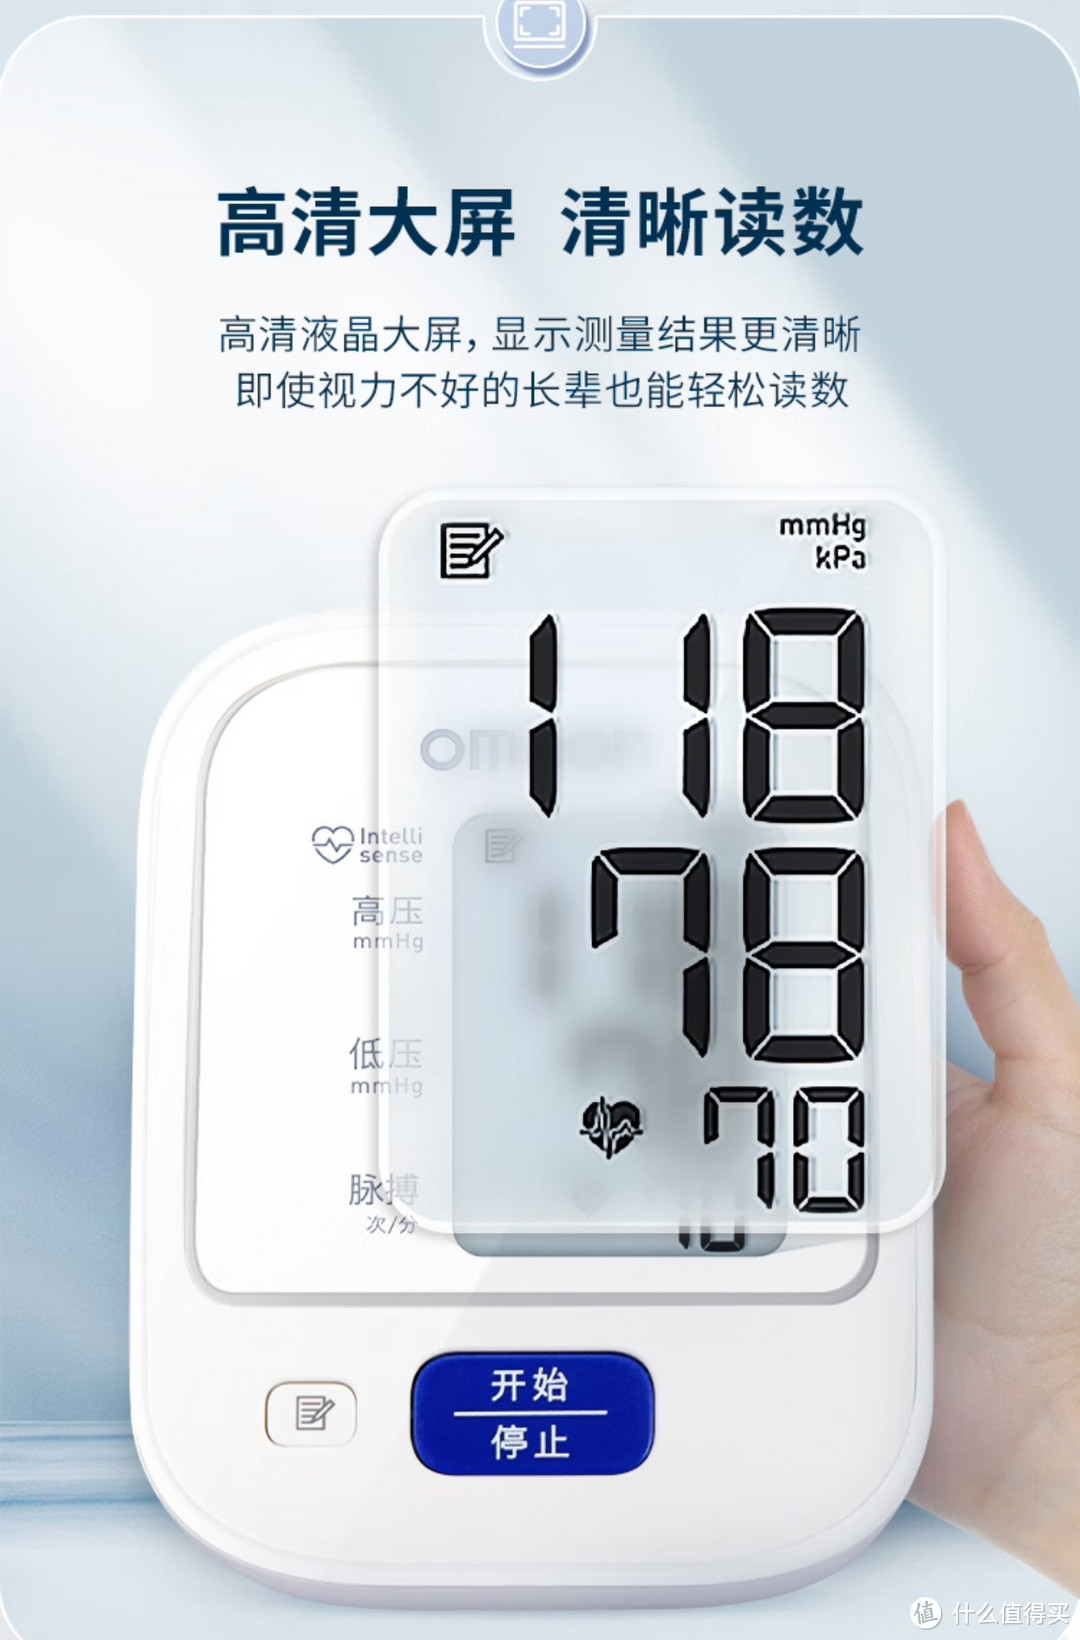 欧姆龙血压计是监测高血压人群的必备医疗器械，值得购买，价格划算。